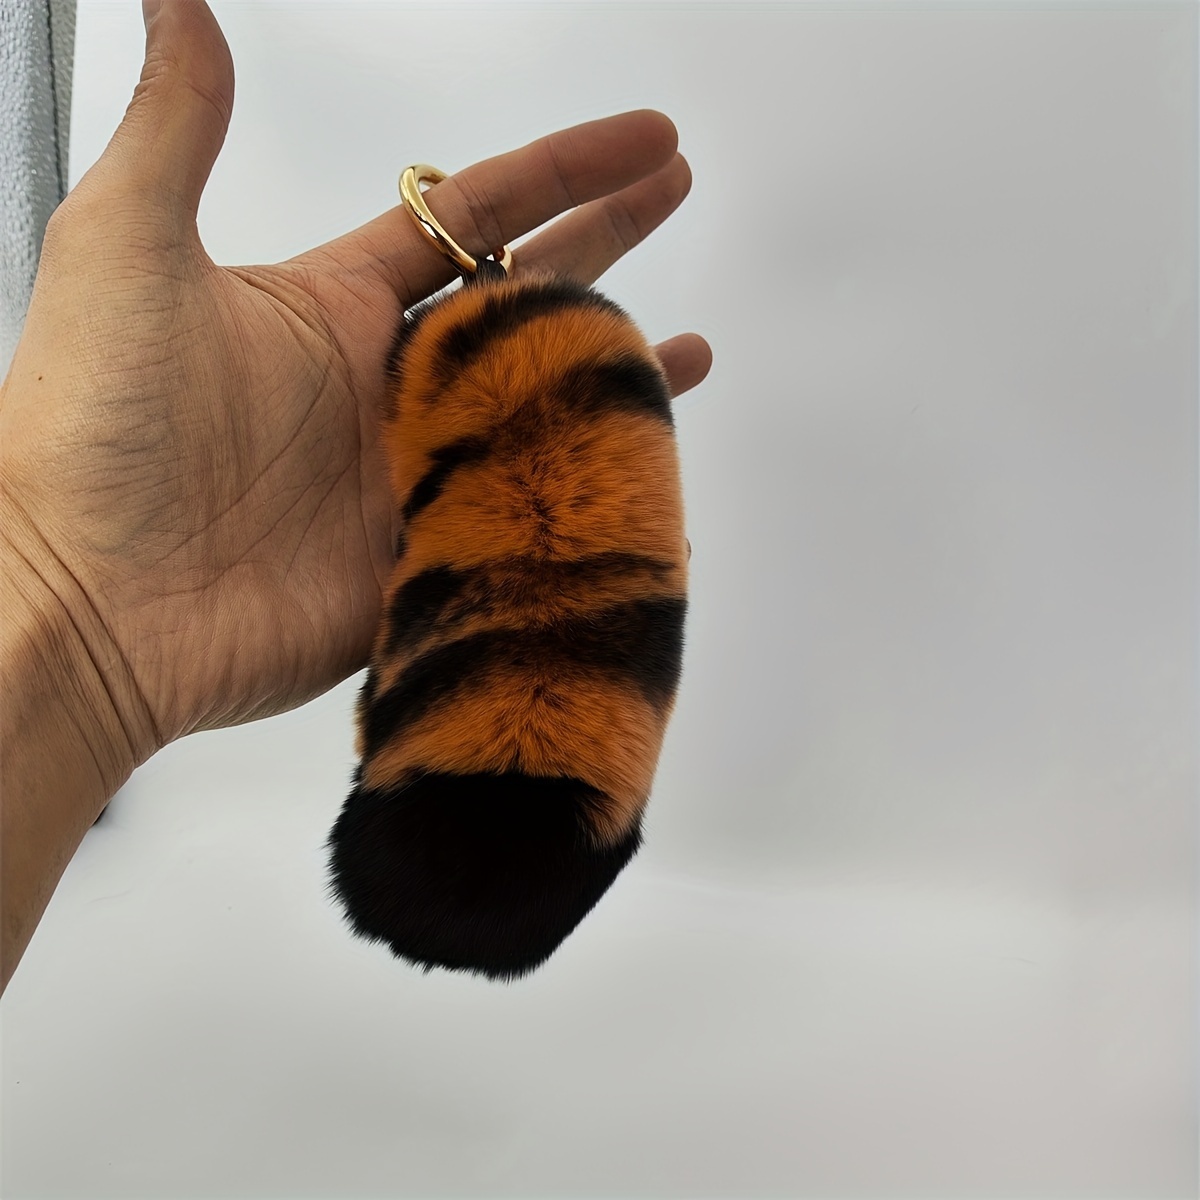 Tiger Claw Keychain